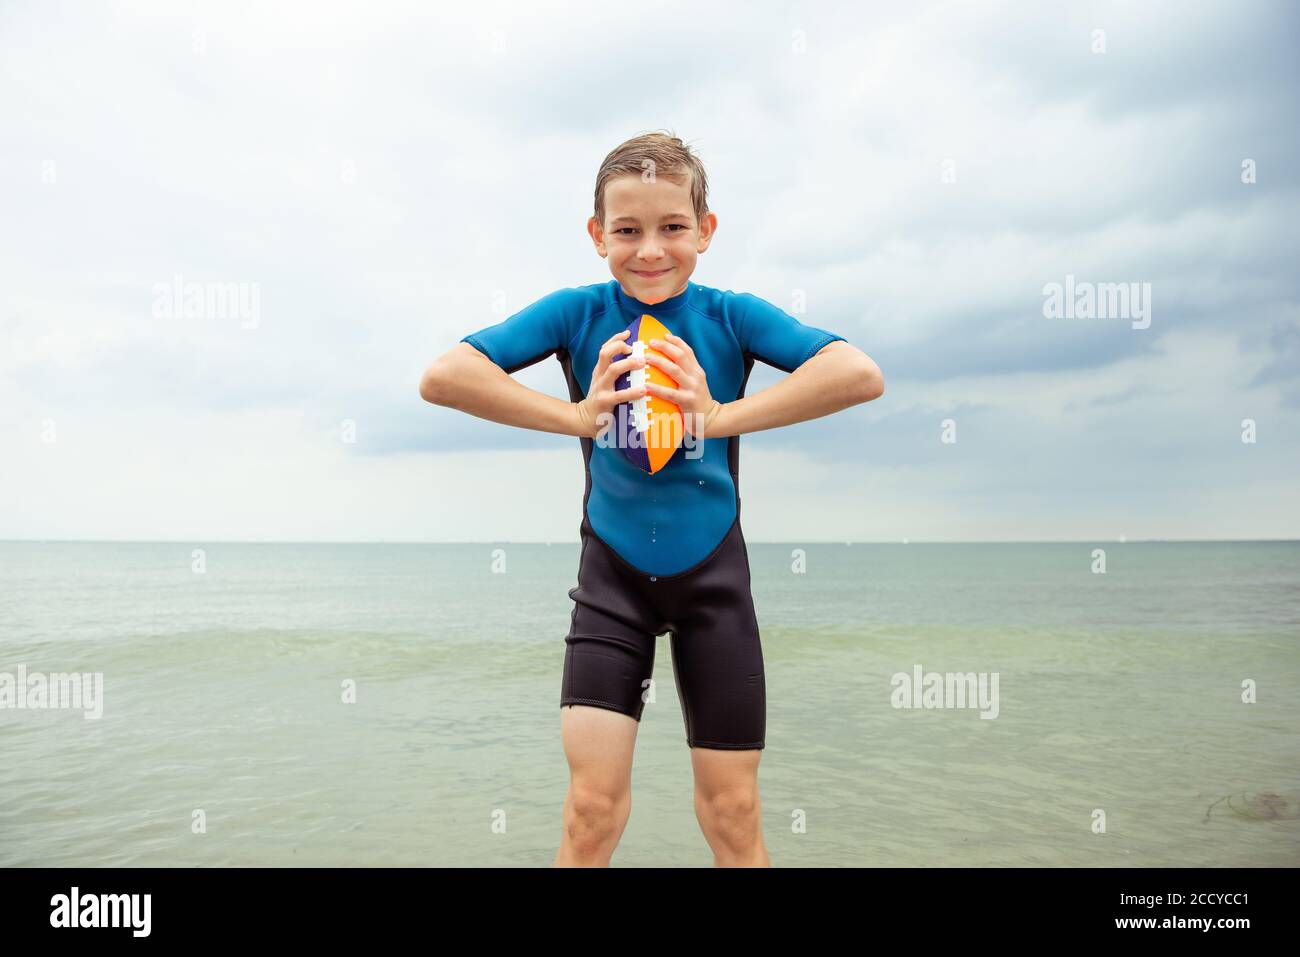 Porträt von schönen Teenager-Jungen spielen mit Ball in Neopren Badeanzug  in der Ostsee Stockfotografie - Alamy